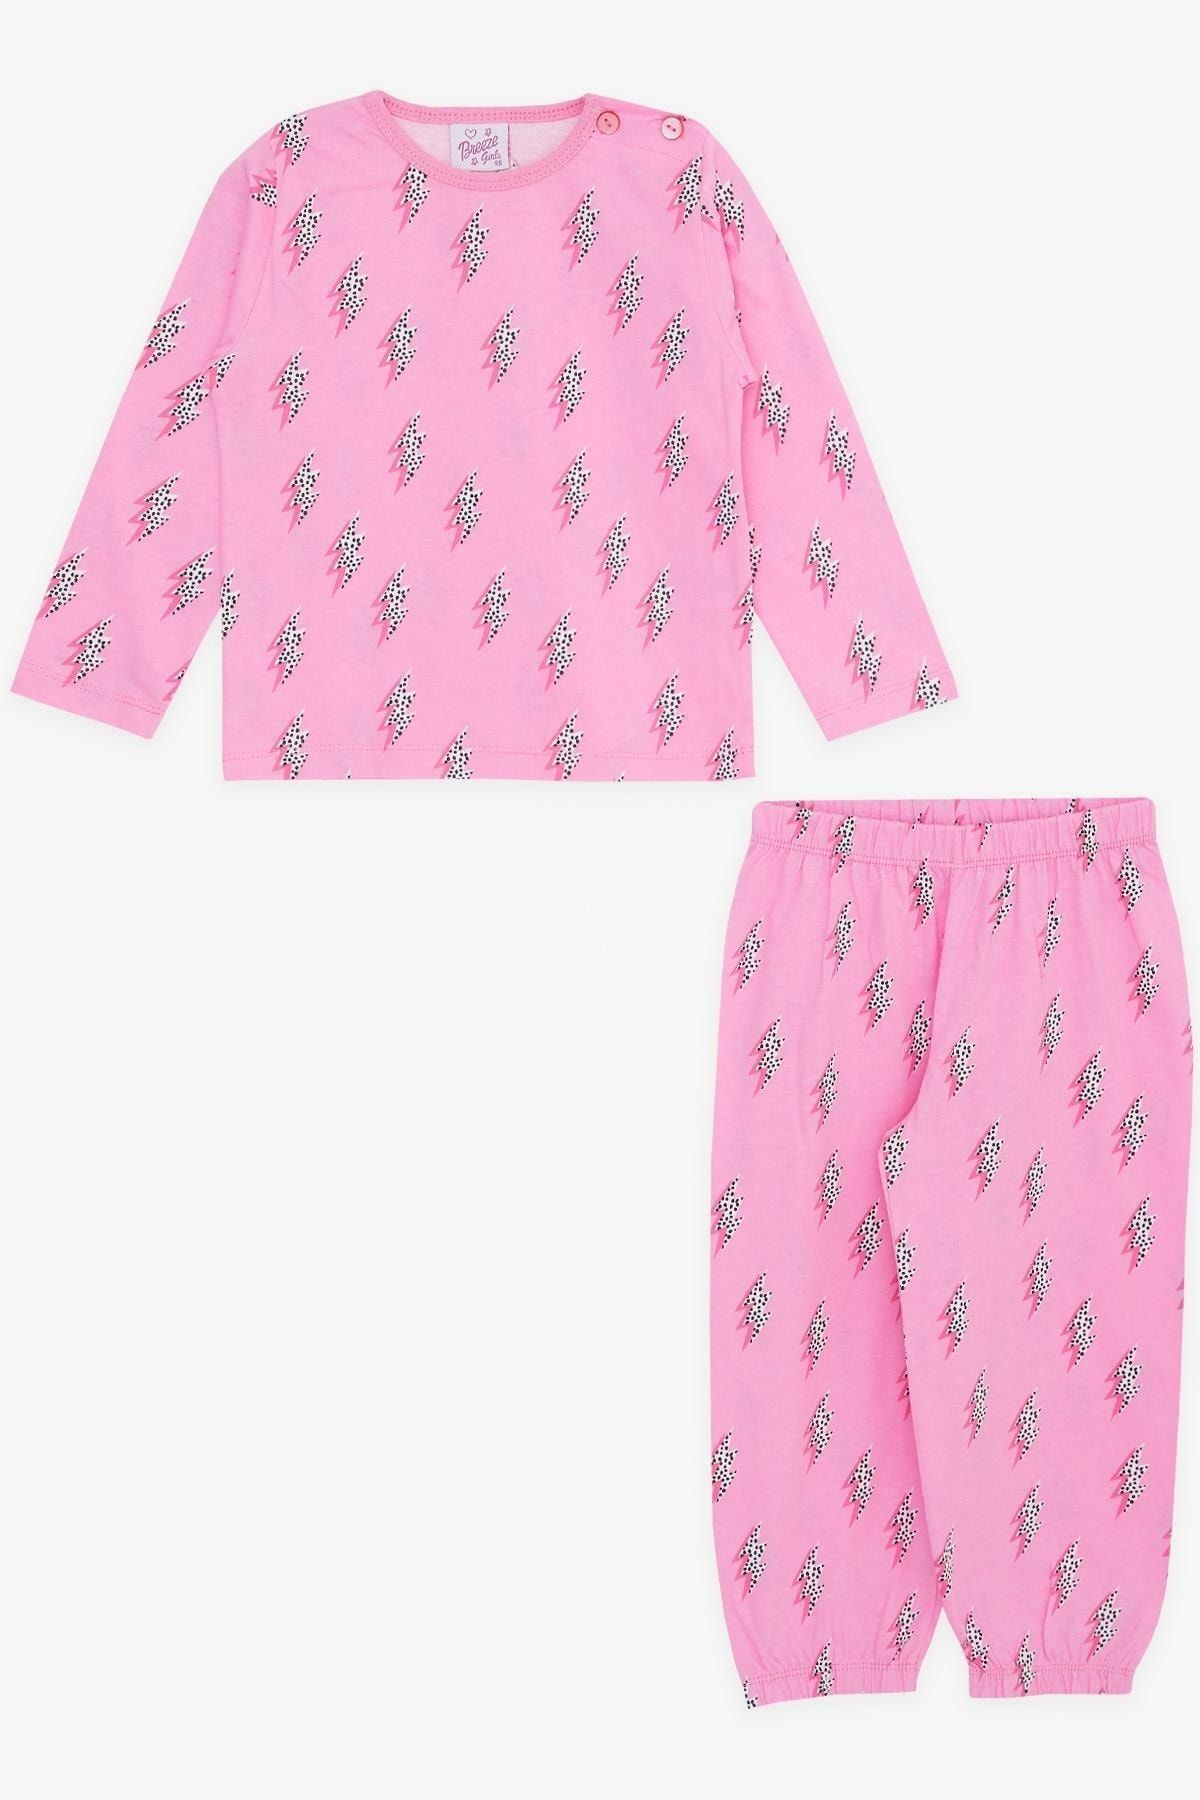 Breeze Kız Bebek Pijama Takımı Şimşek Desenli Pembe (9 Ay-3 Yaş)